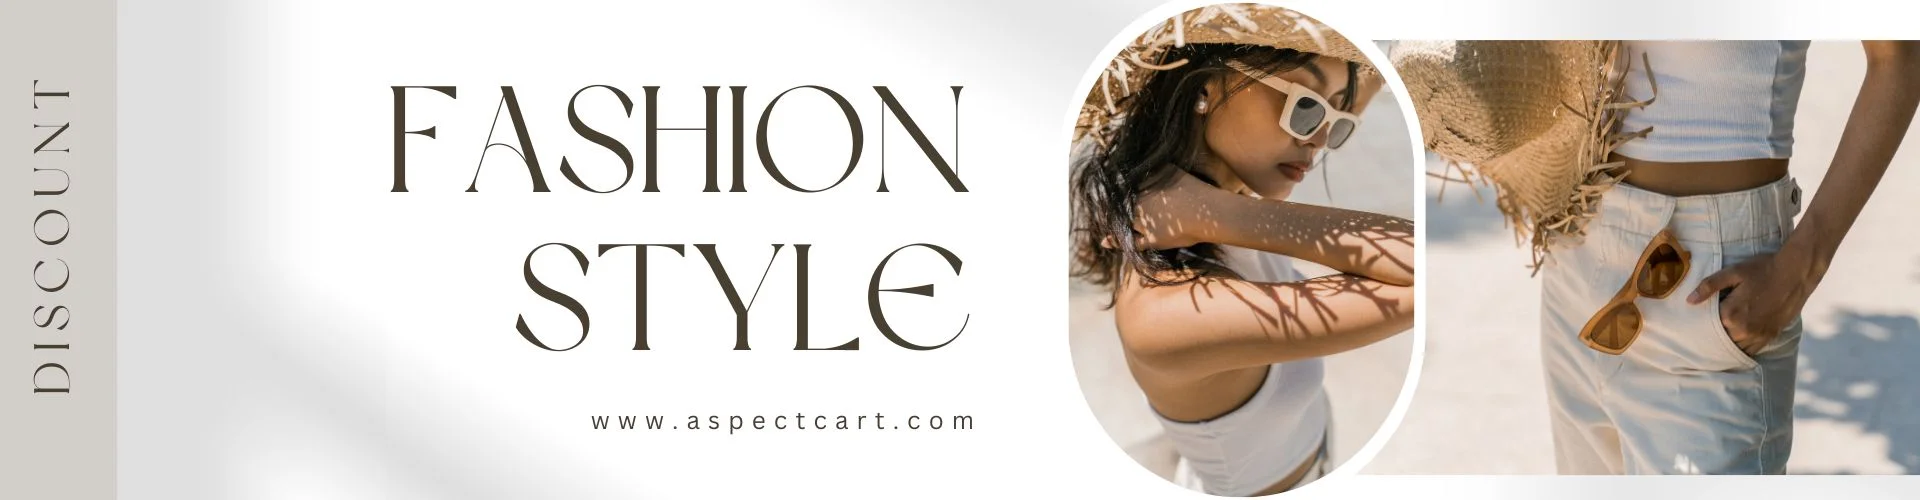 Banner van een online modewinkel met moderne kleding en accessoires